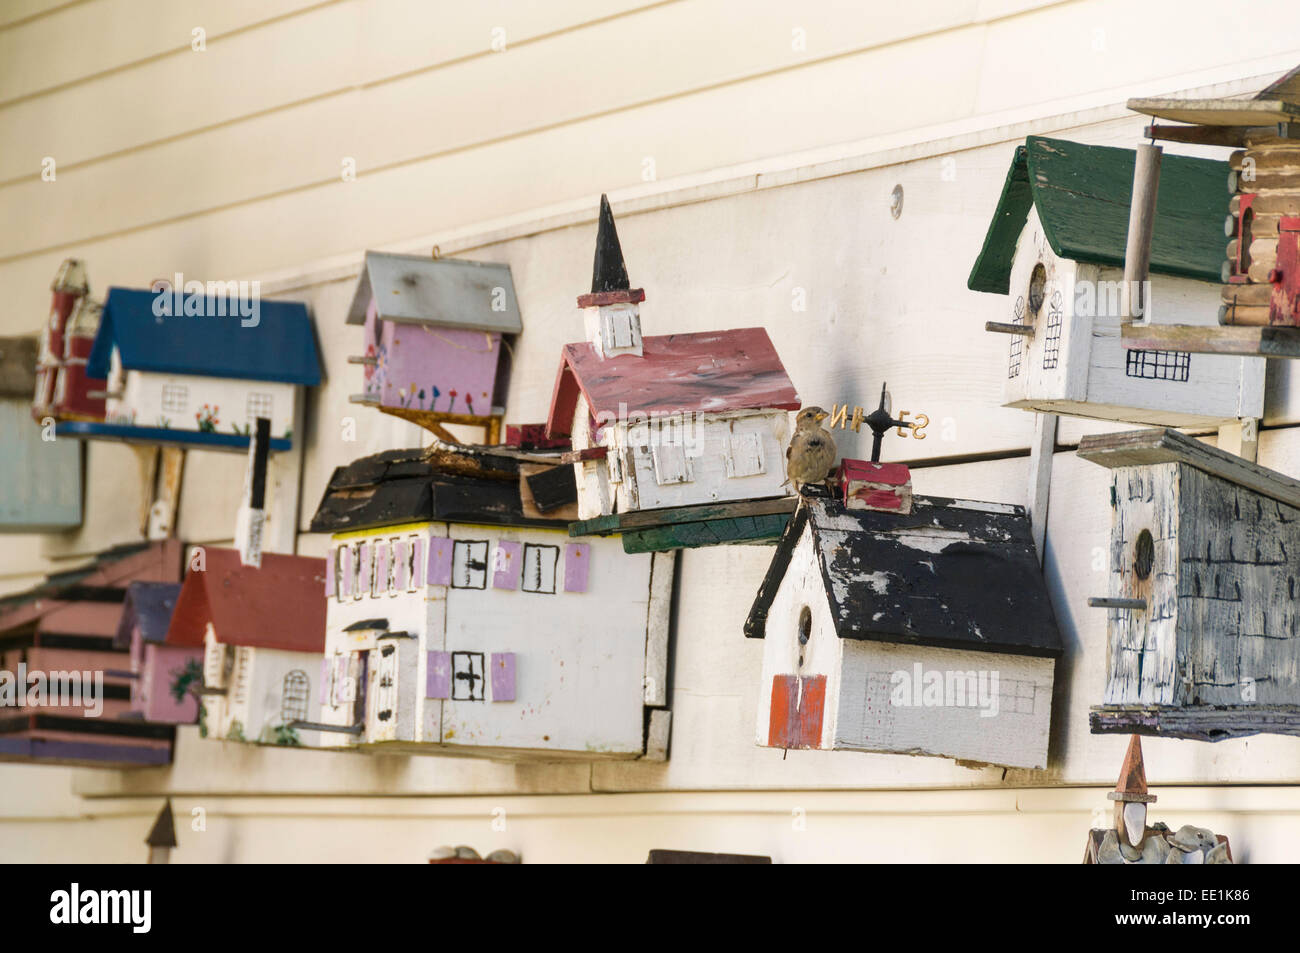 Vogelhäuschen für Verkauf in einem Antiquitätengeschäft in Chatham, Massachusetts, New England, Vereinigte Staaten von Amerika, Nordamerika Stockfoto